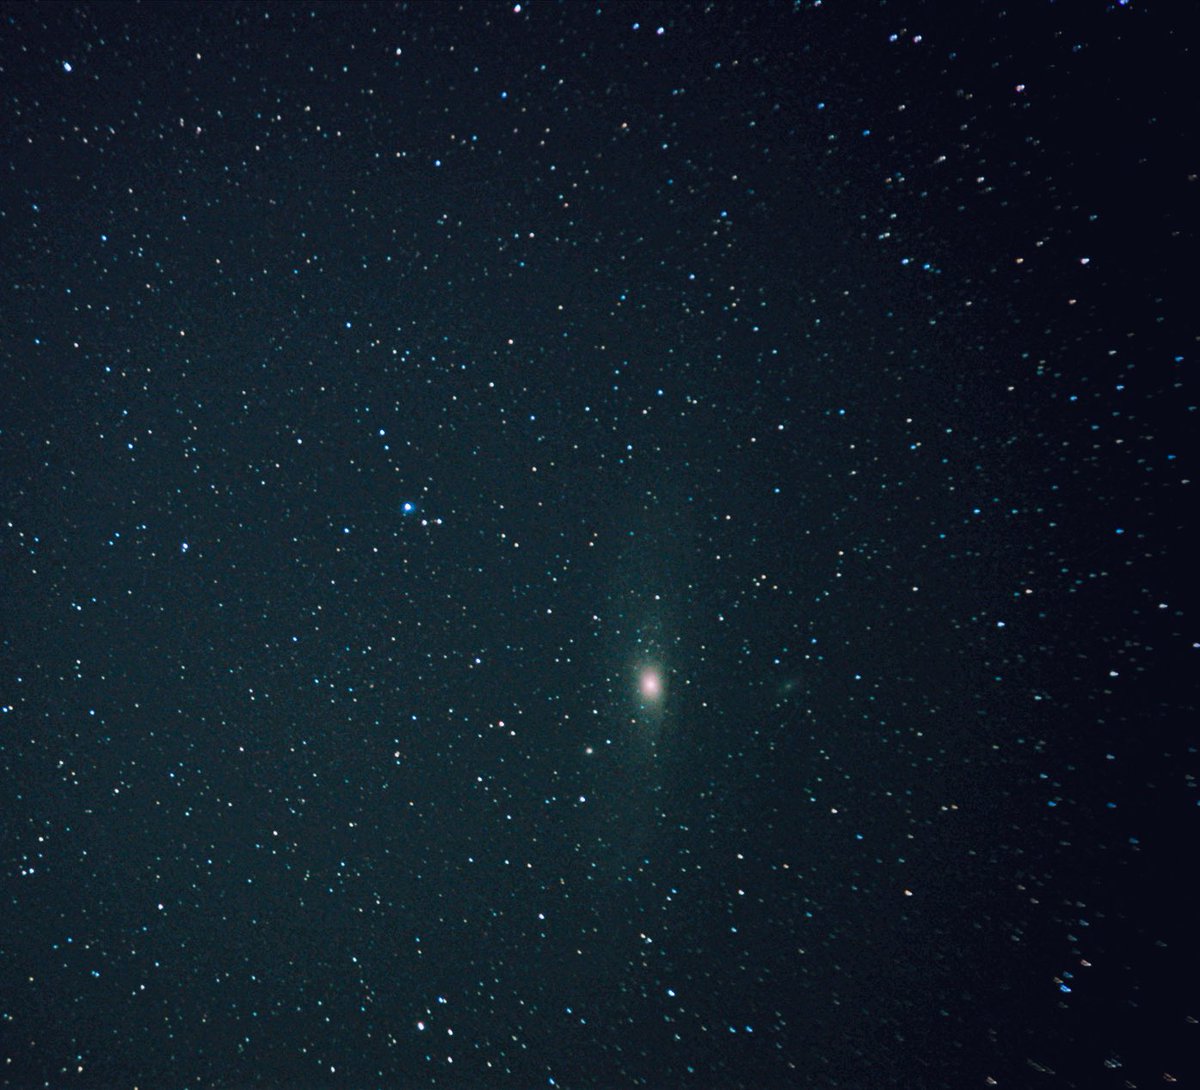 M31 (#AndromedaGalaxy)

M110 ere pixkat ikus daiteke.